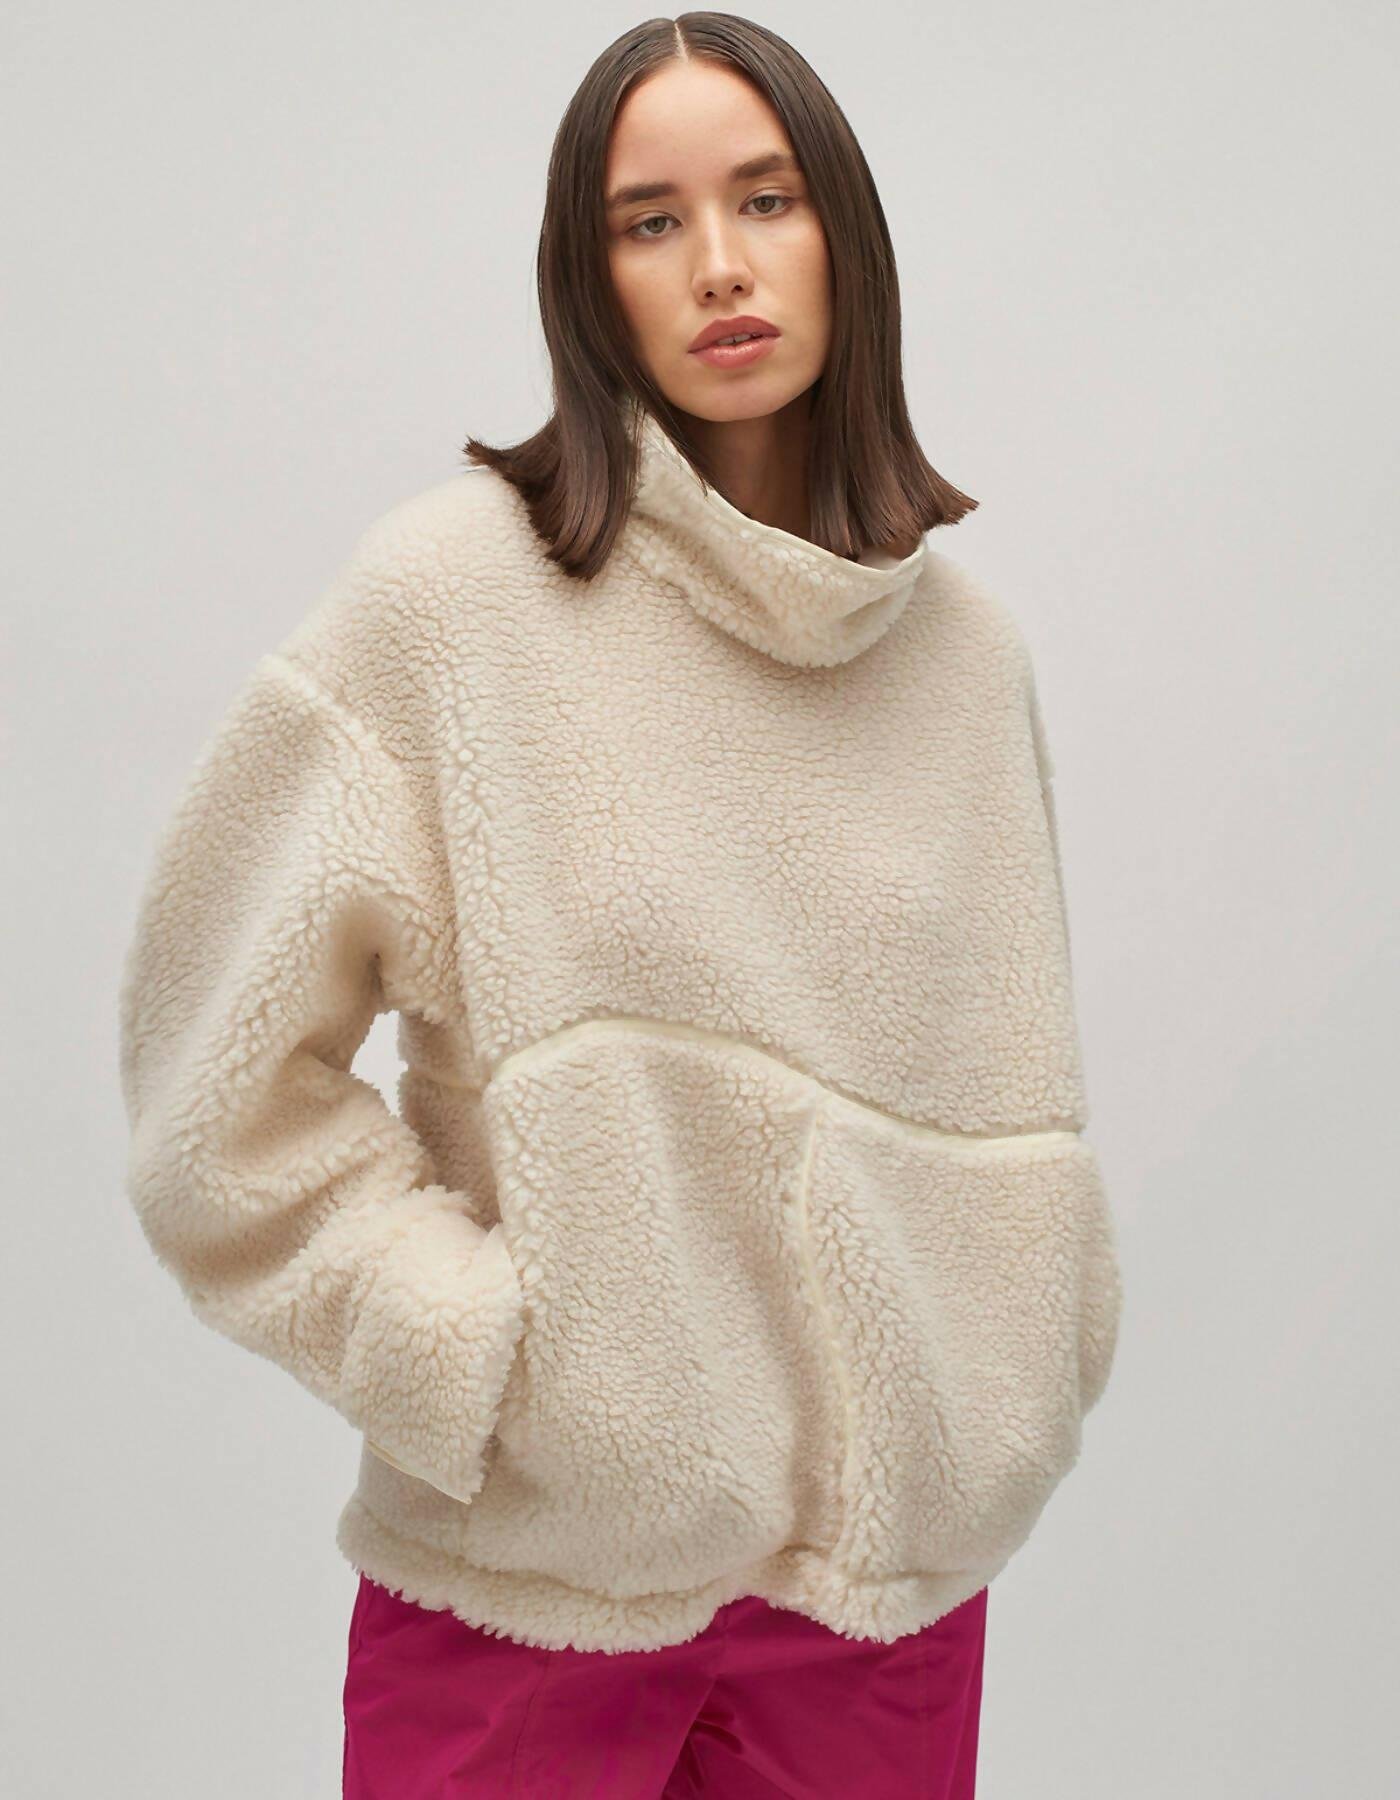 Beast Fleece Pullover by DAIGE